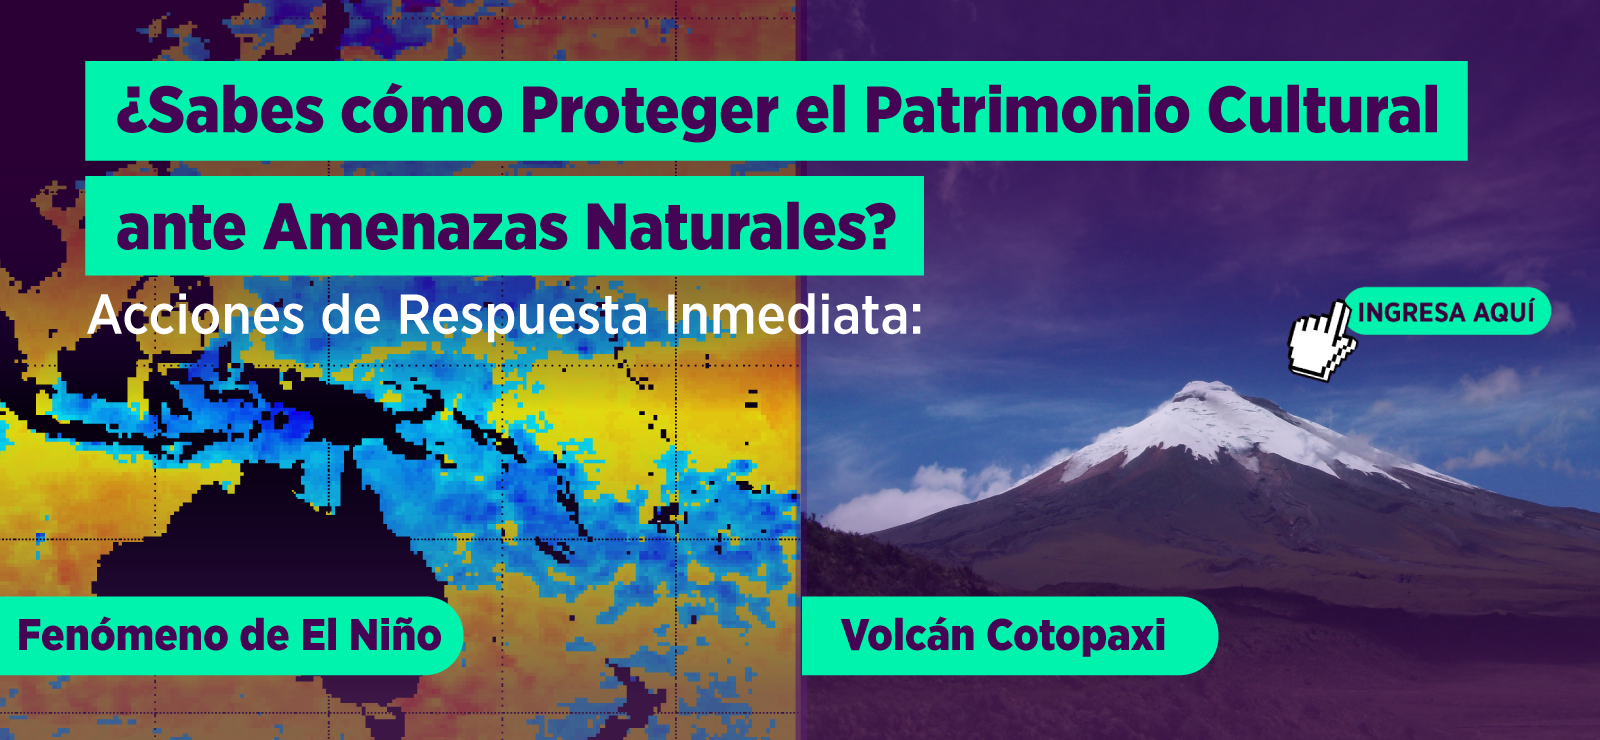 Acciones respuesta inmediata Fenomeno del Niño y Volcan Cotopaxi.